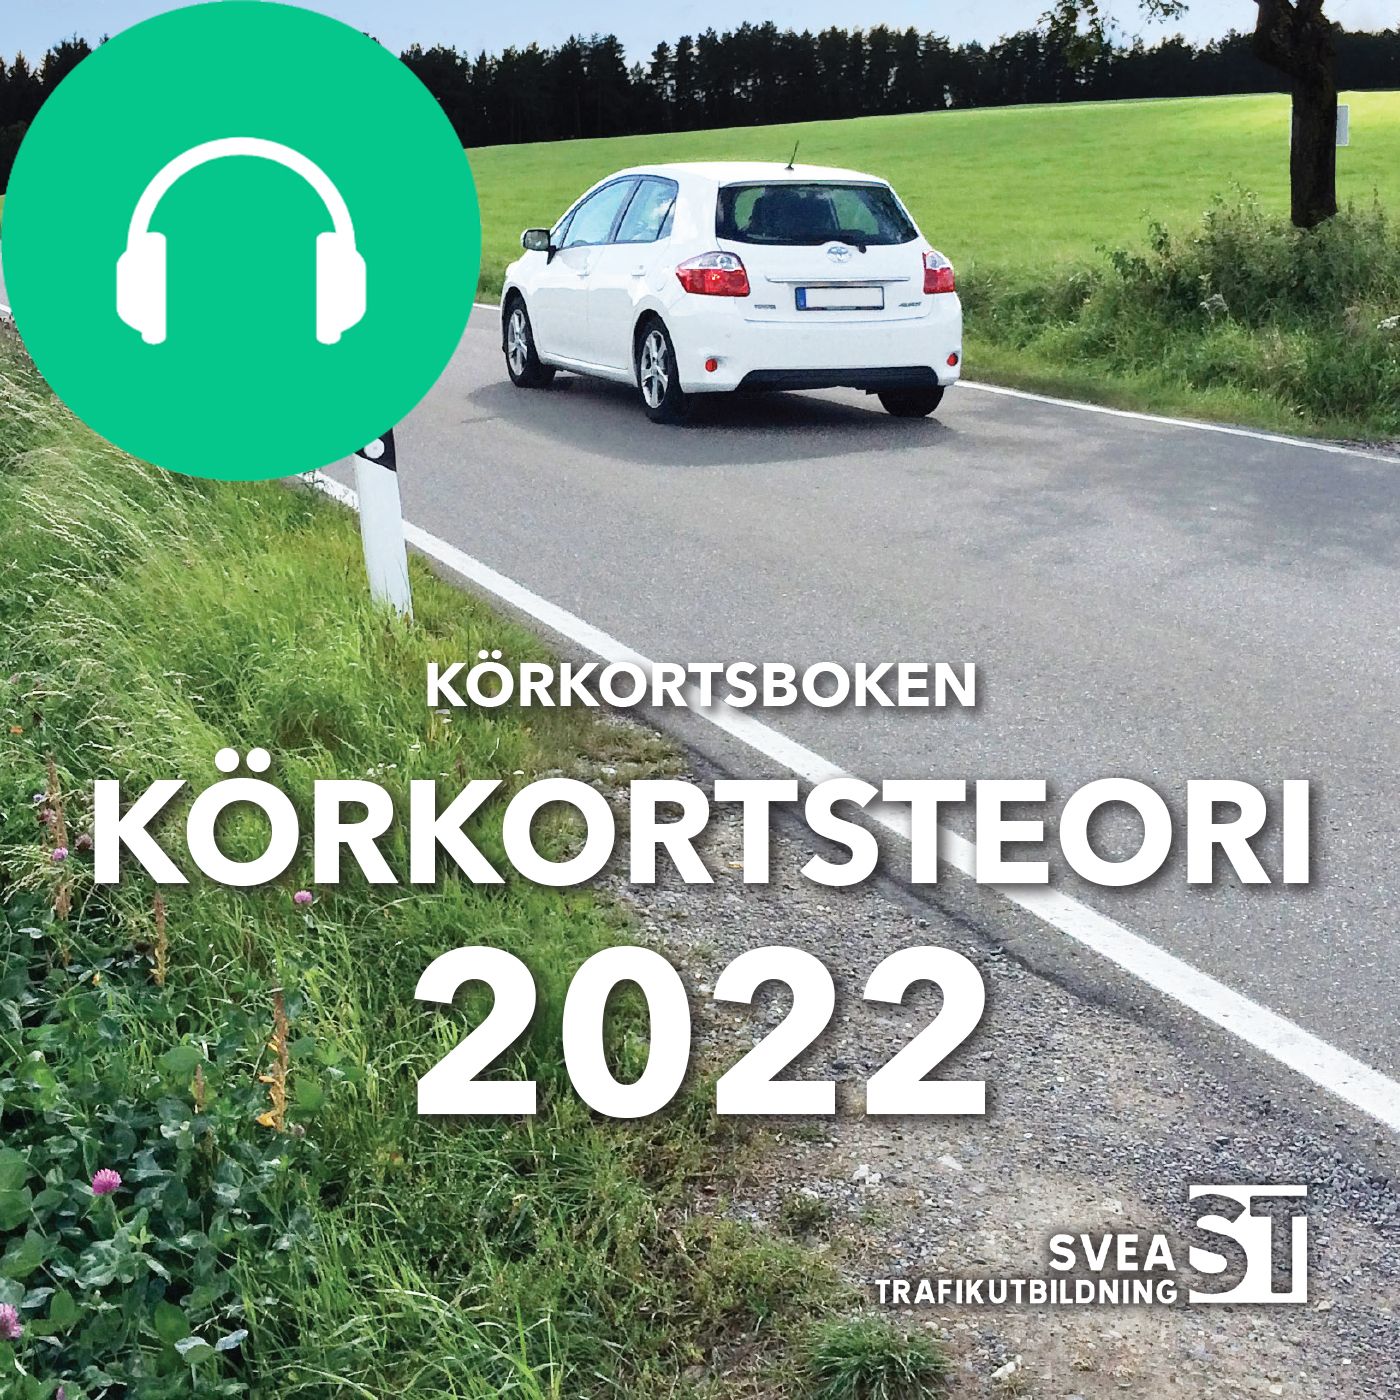 Körkortsboken Körkortsteori 2022, ljudbok av Svea Trafikutbildning